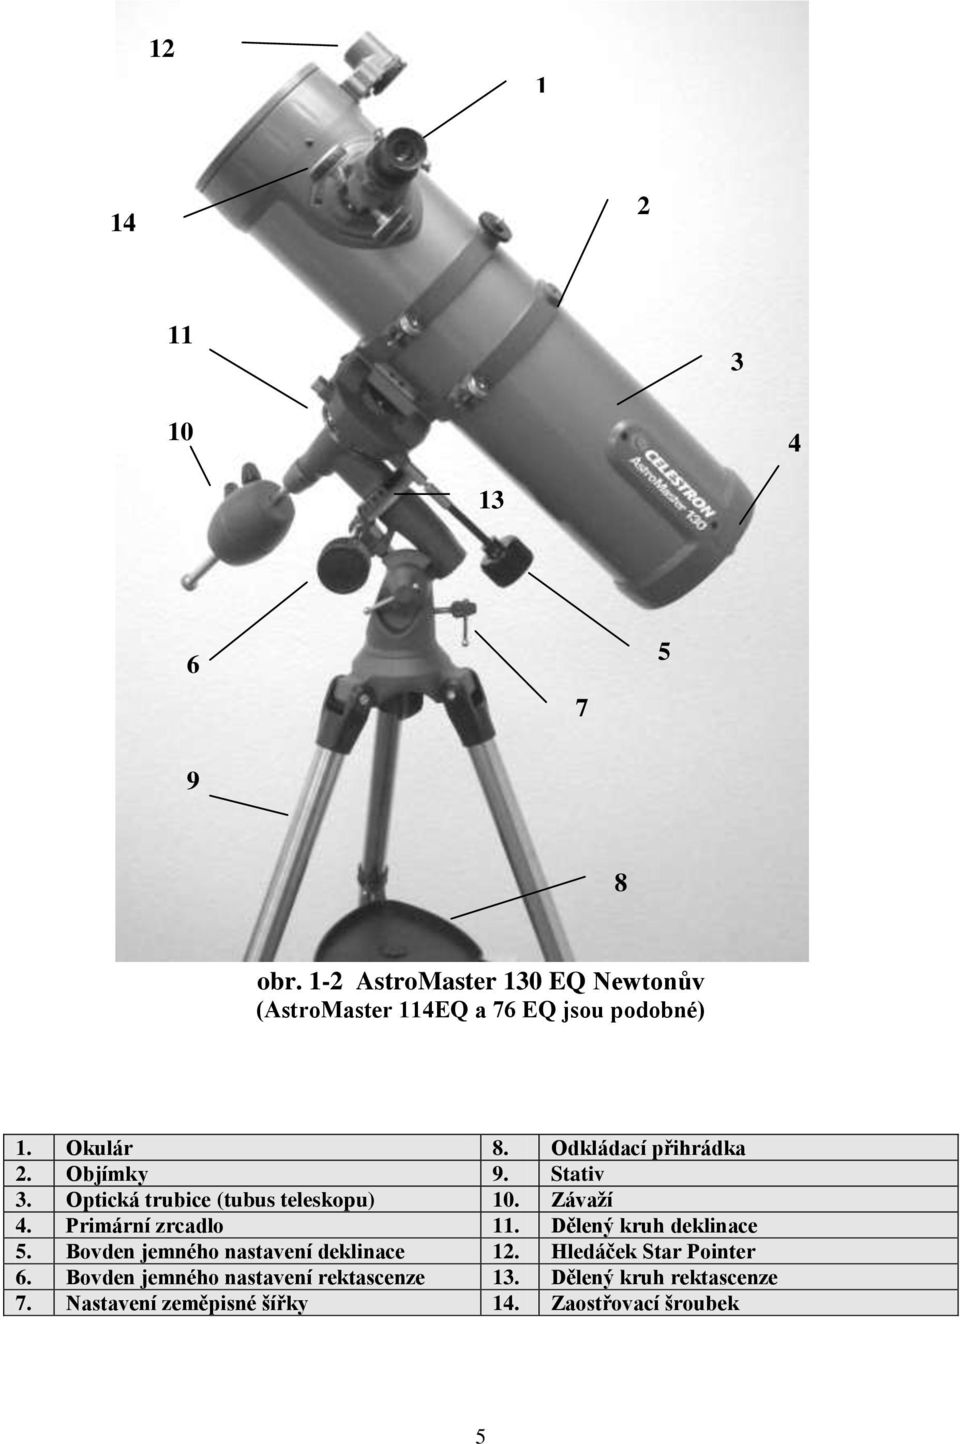 Objímky 9. Stativ 3. Optická trubice (tubus teleskopu) 10. Závaţí 4. Primární zrcadlo 11.